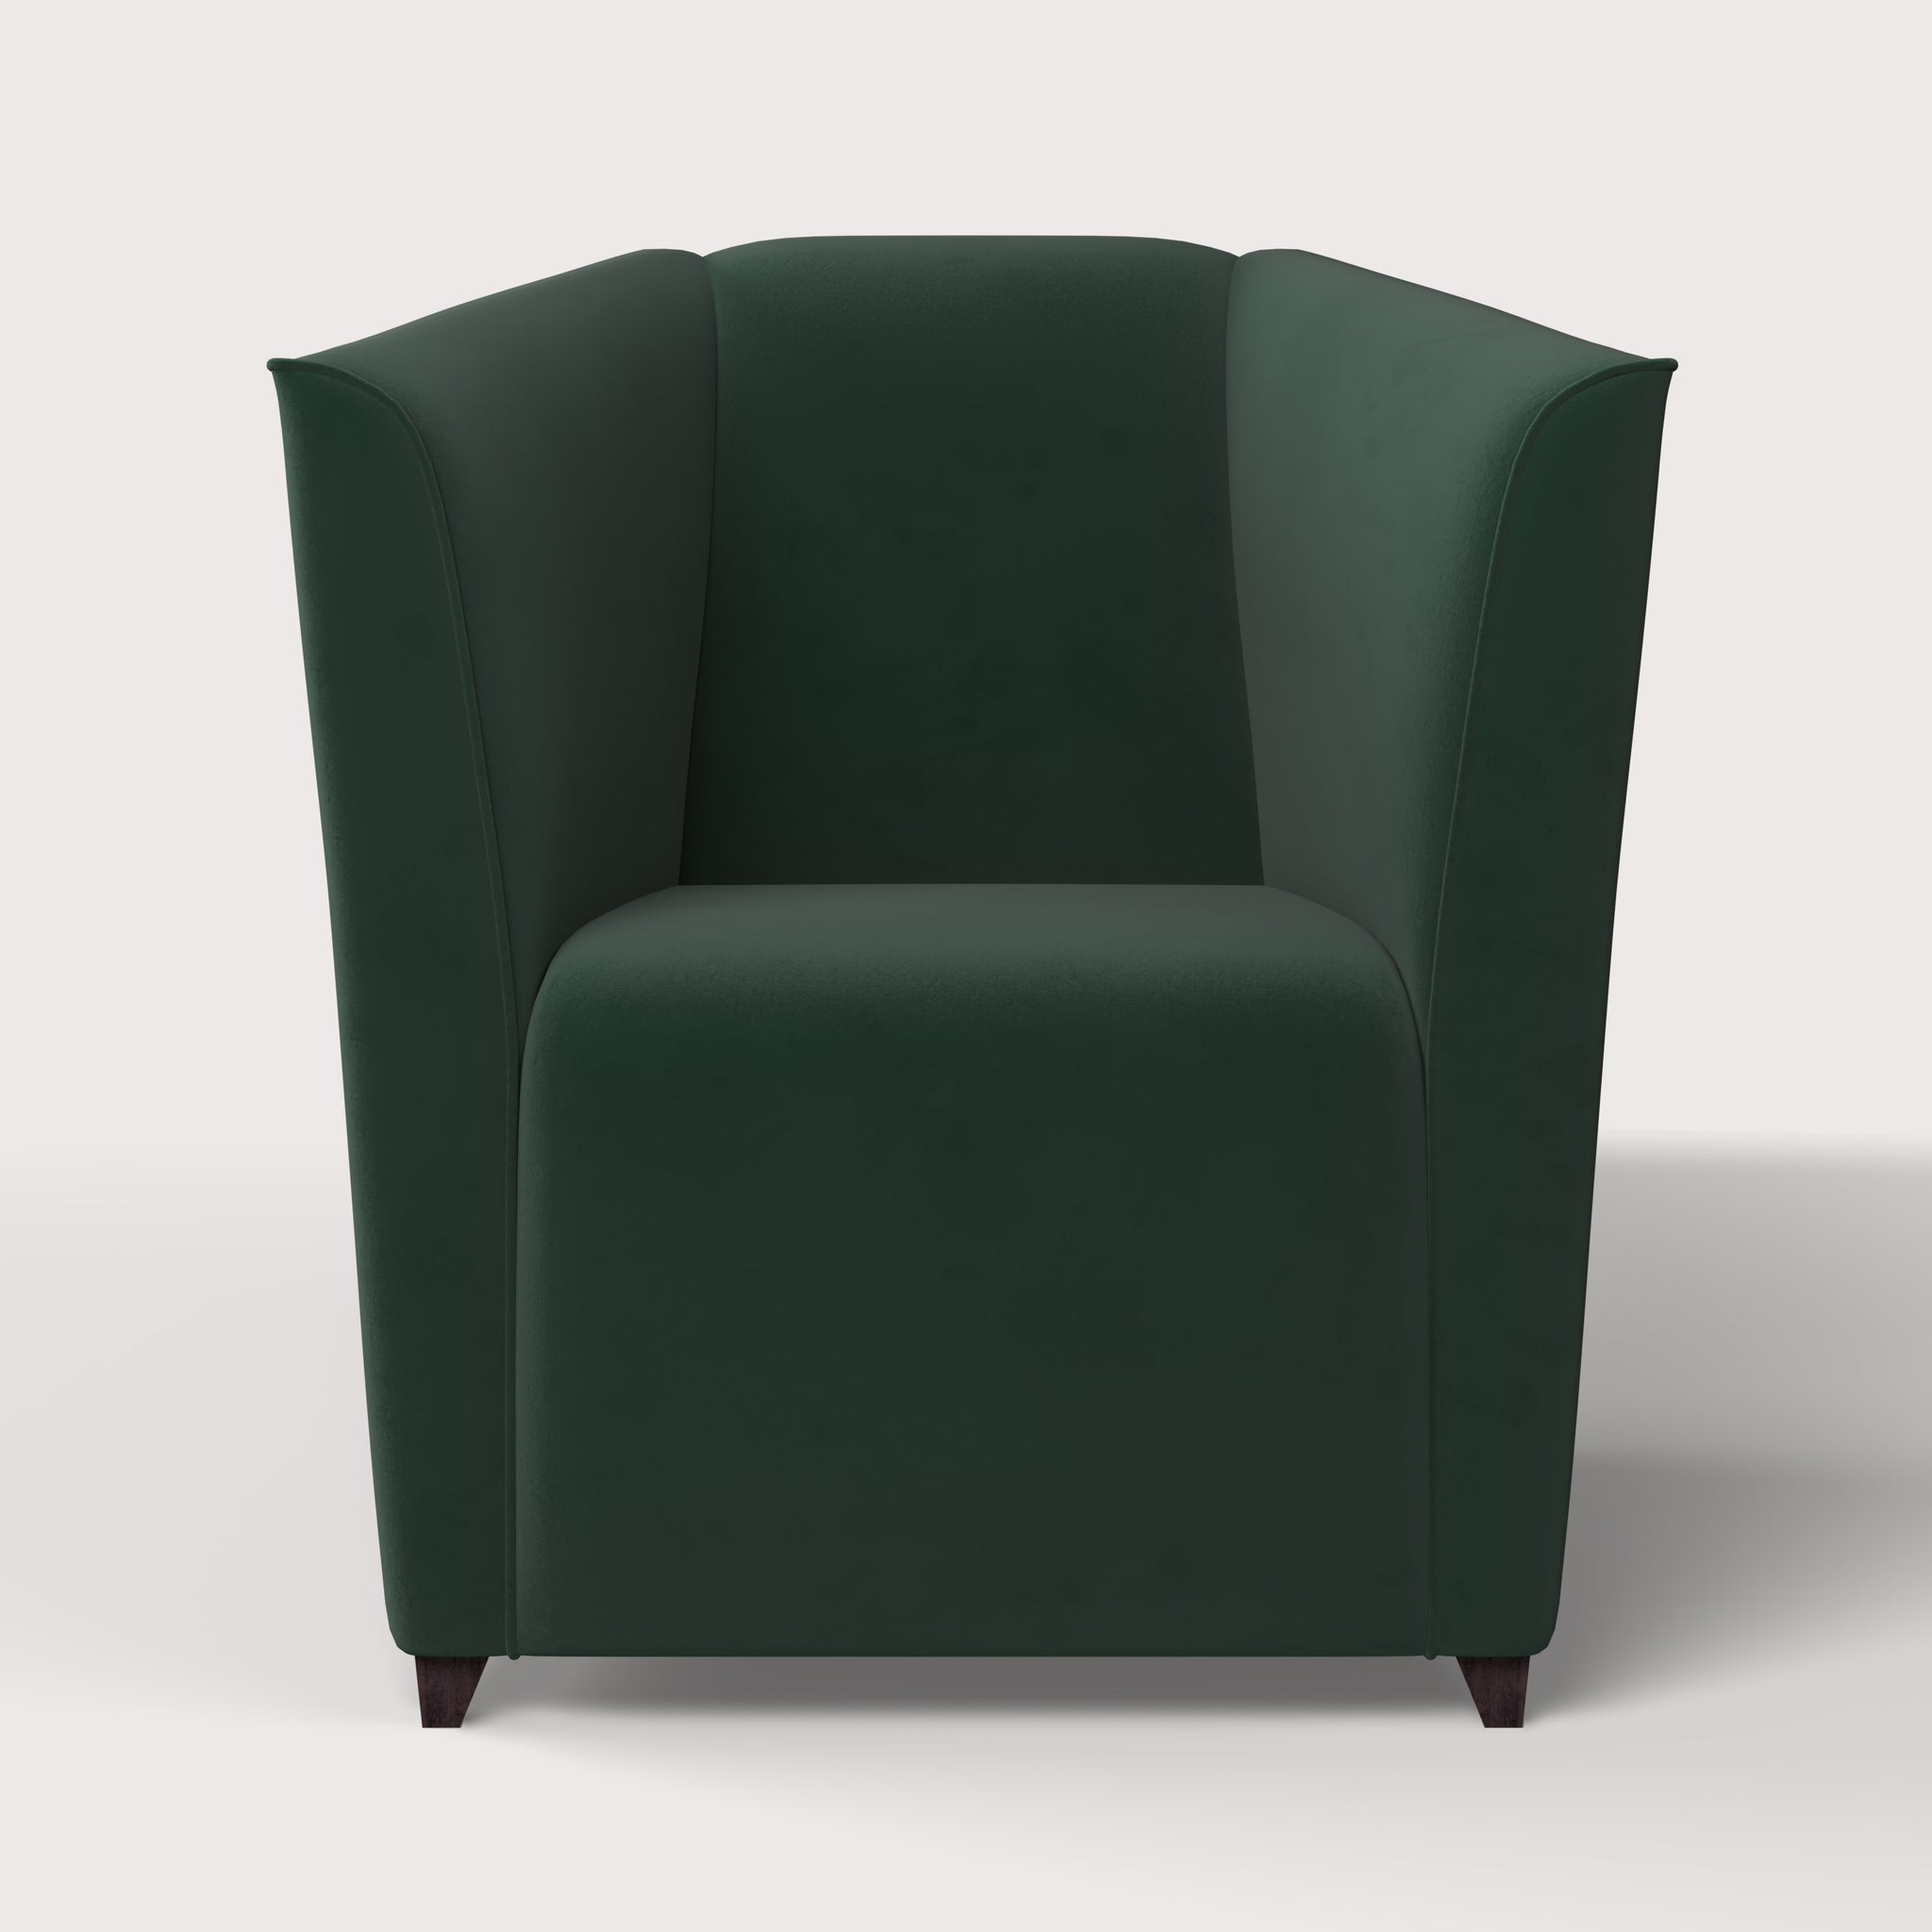 The Hockney Armchair